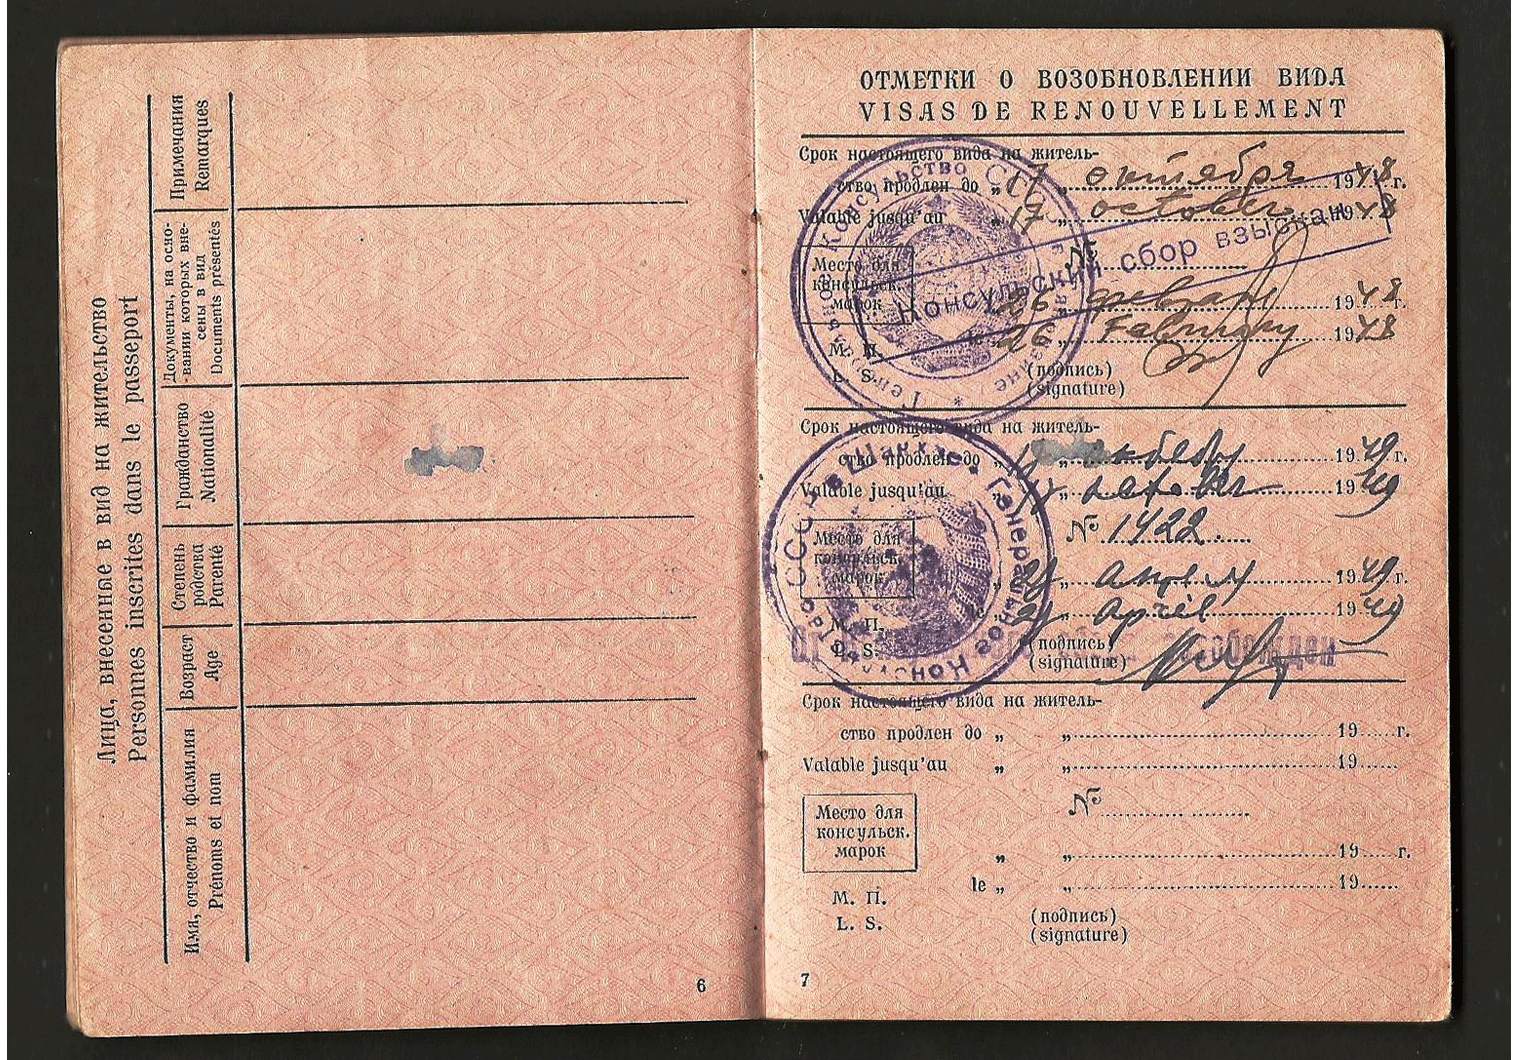 WW2 China passport